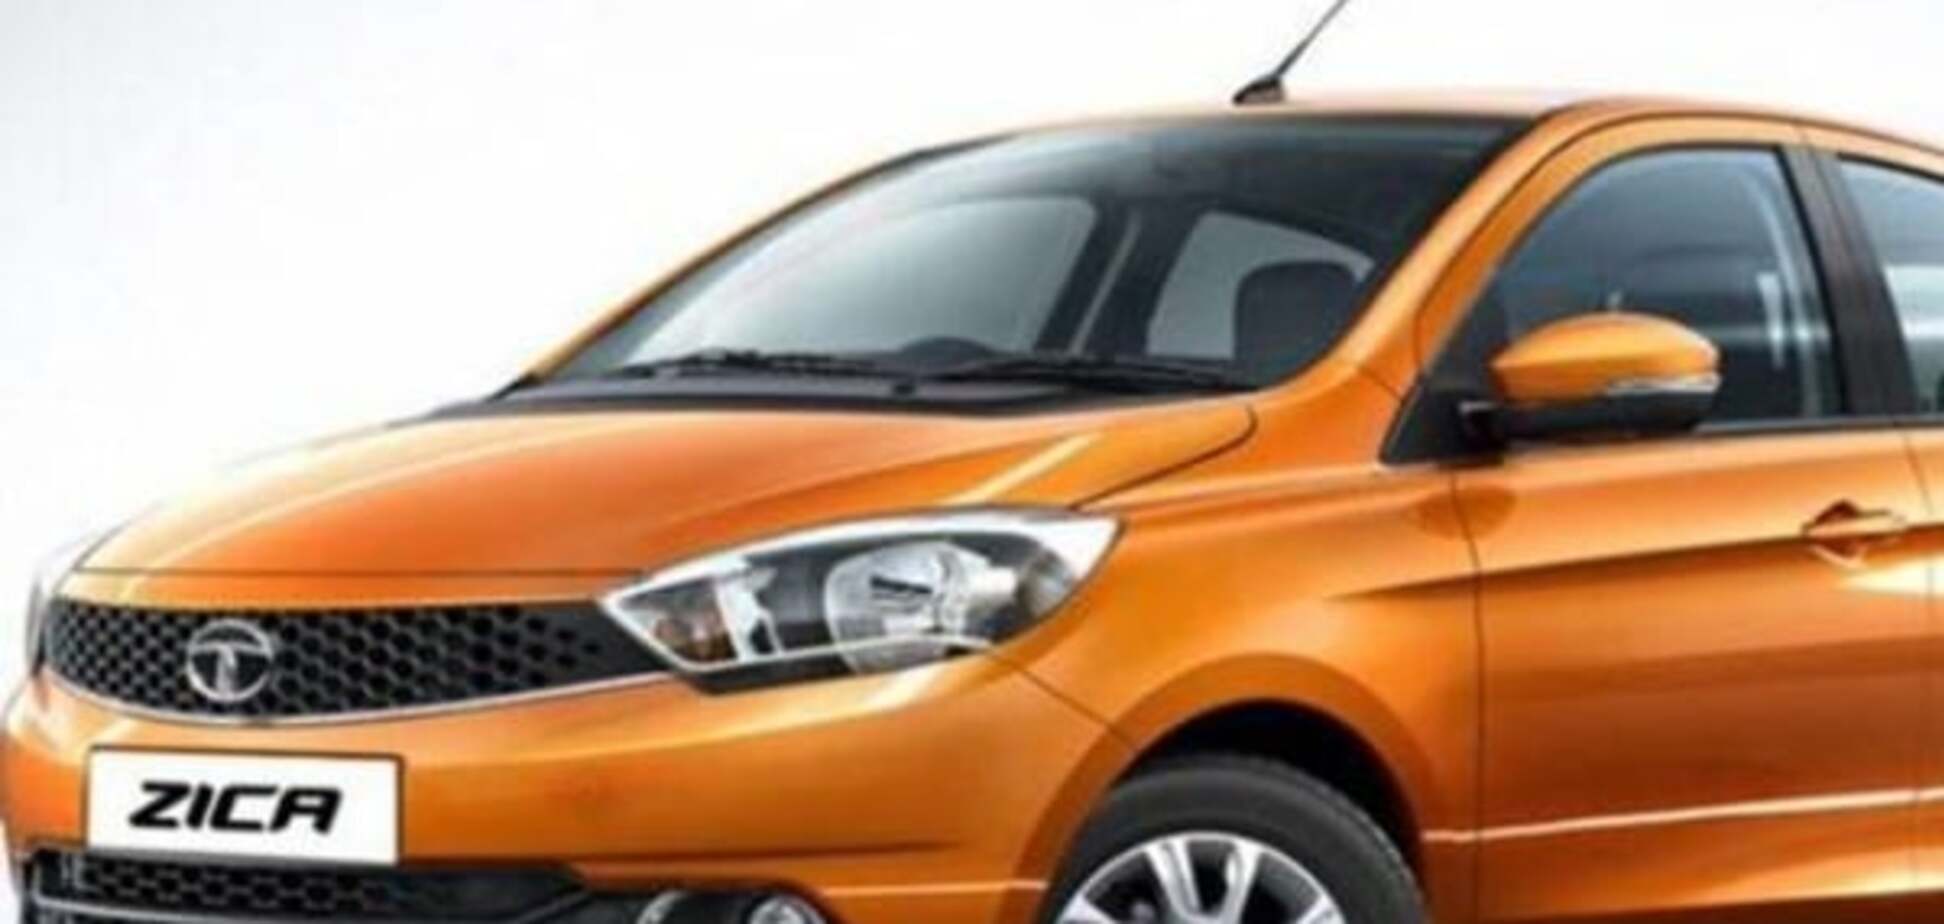 Компания Tata Motors переименует модель авто из-за опасного вируса 